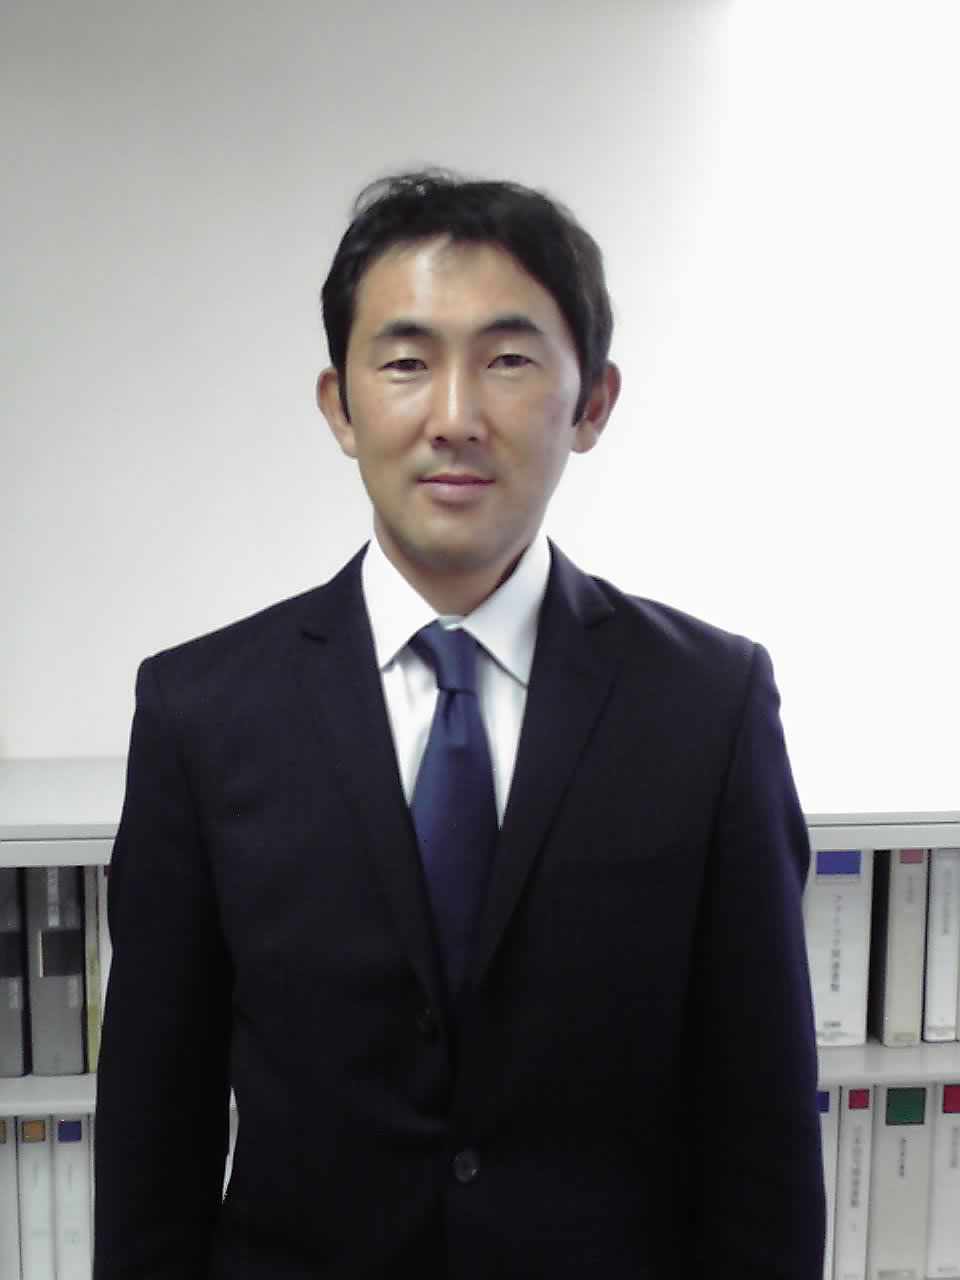 ジェルシステム 「顧客の声を製品に反映」 安井雄司取締役営業本部長